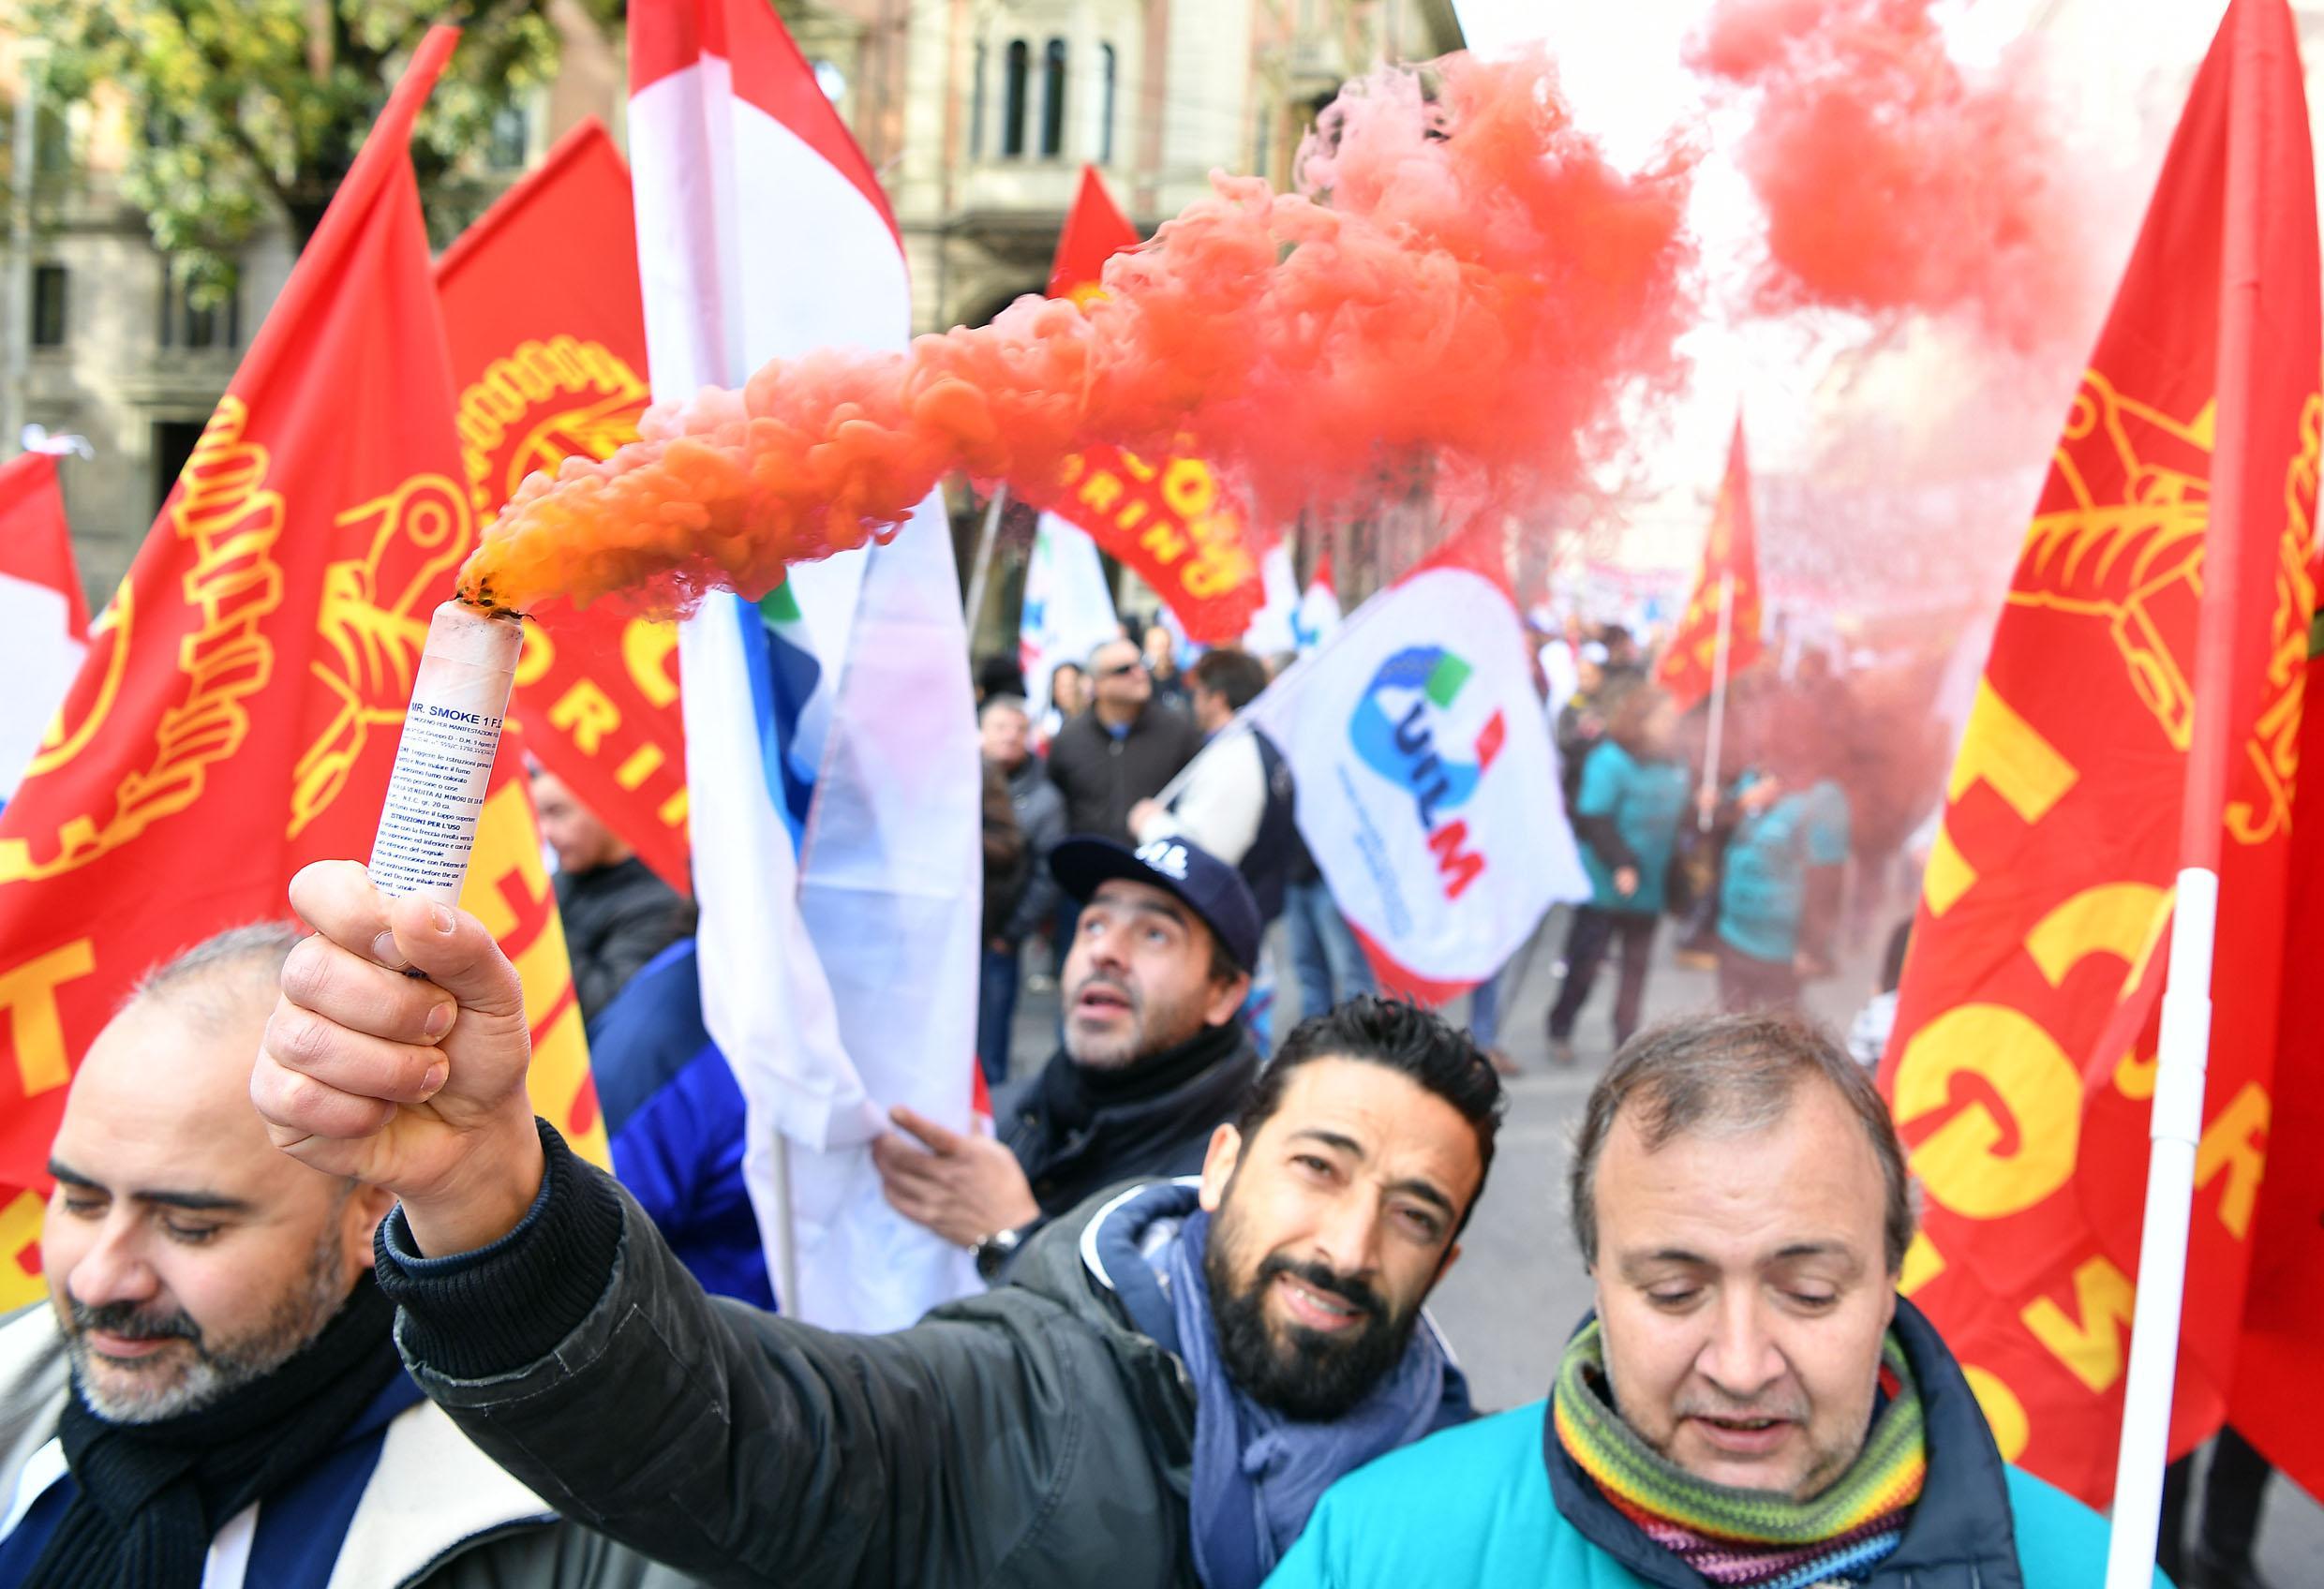 Un momento del corteo dei lavoratori dell'azienda Embraco - Gruppo Whirlpool in occasione dello sciopero contro i licenziamenti sfila per le vie del centro città, Torino, 10 novembre 2017. ANSA/ALESSANDRO DI MARCO